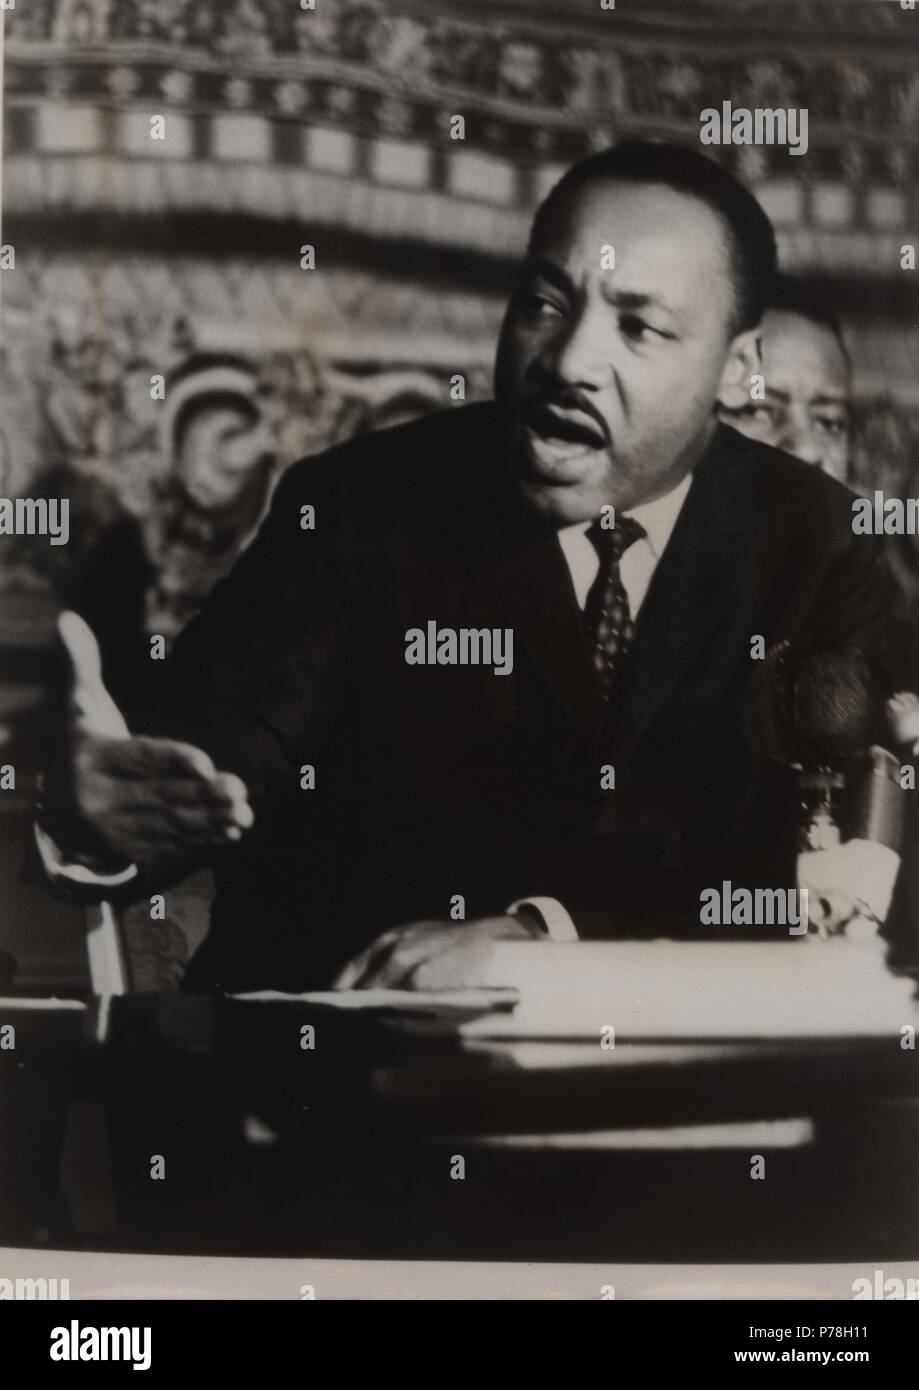 Martin Luther King (1929-1968), pastor protestante lider de la lucha no violenta ante la discriminación racial, durante la conferencia en Noruega al ir a recibir el Premio Nobel de la Paz. en 1964. Stock Photo